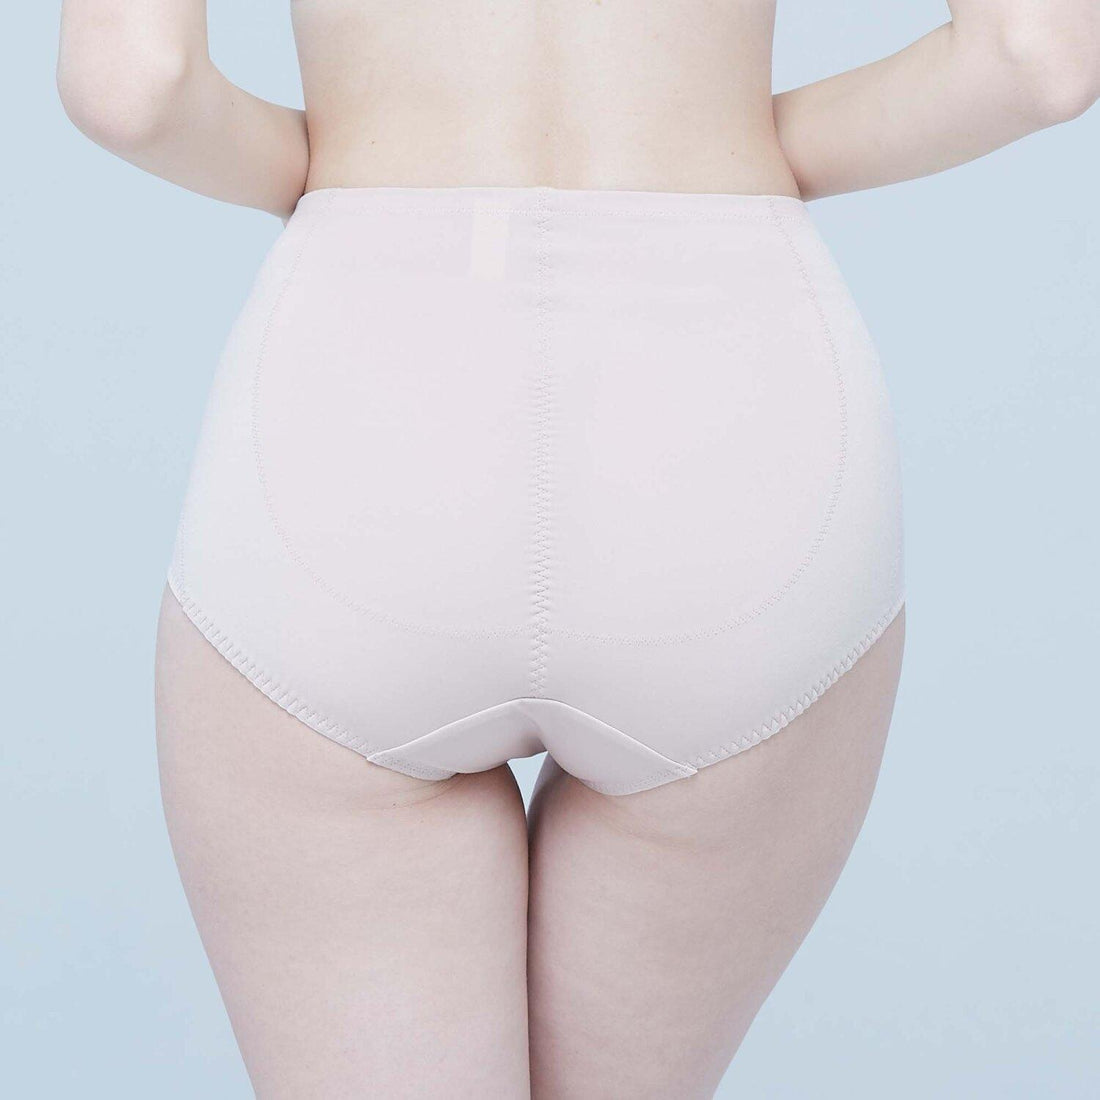 Wacoal Cool Innovation Stay Abdominal Underwear Model WG1268 Beige (BE)